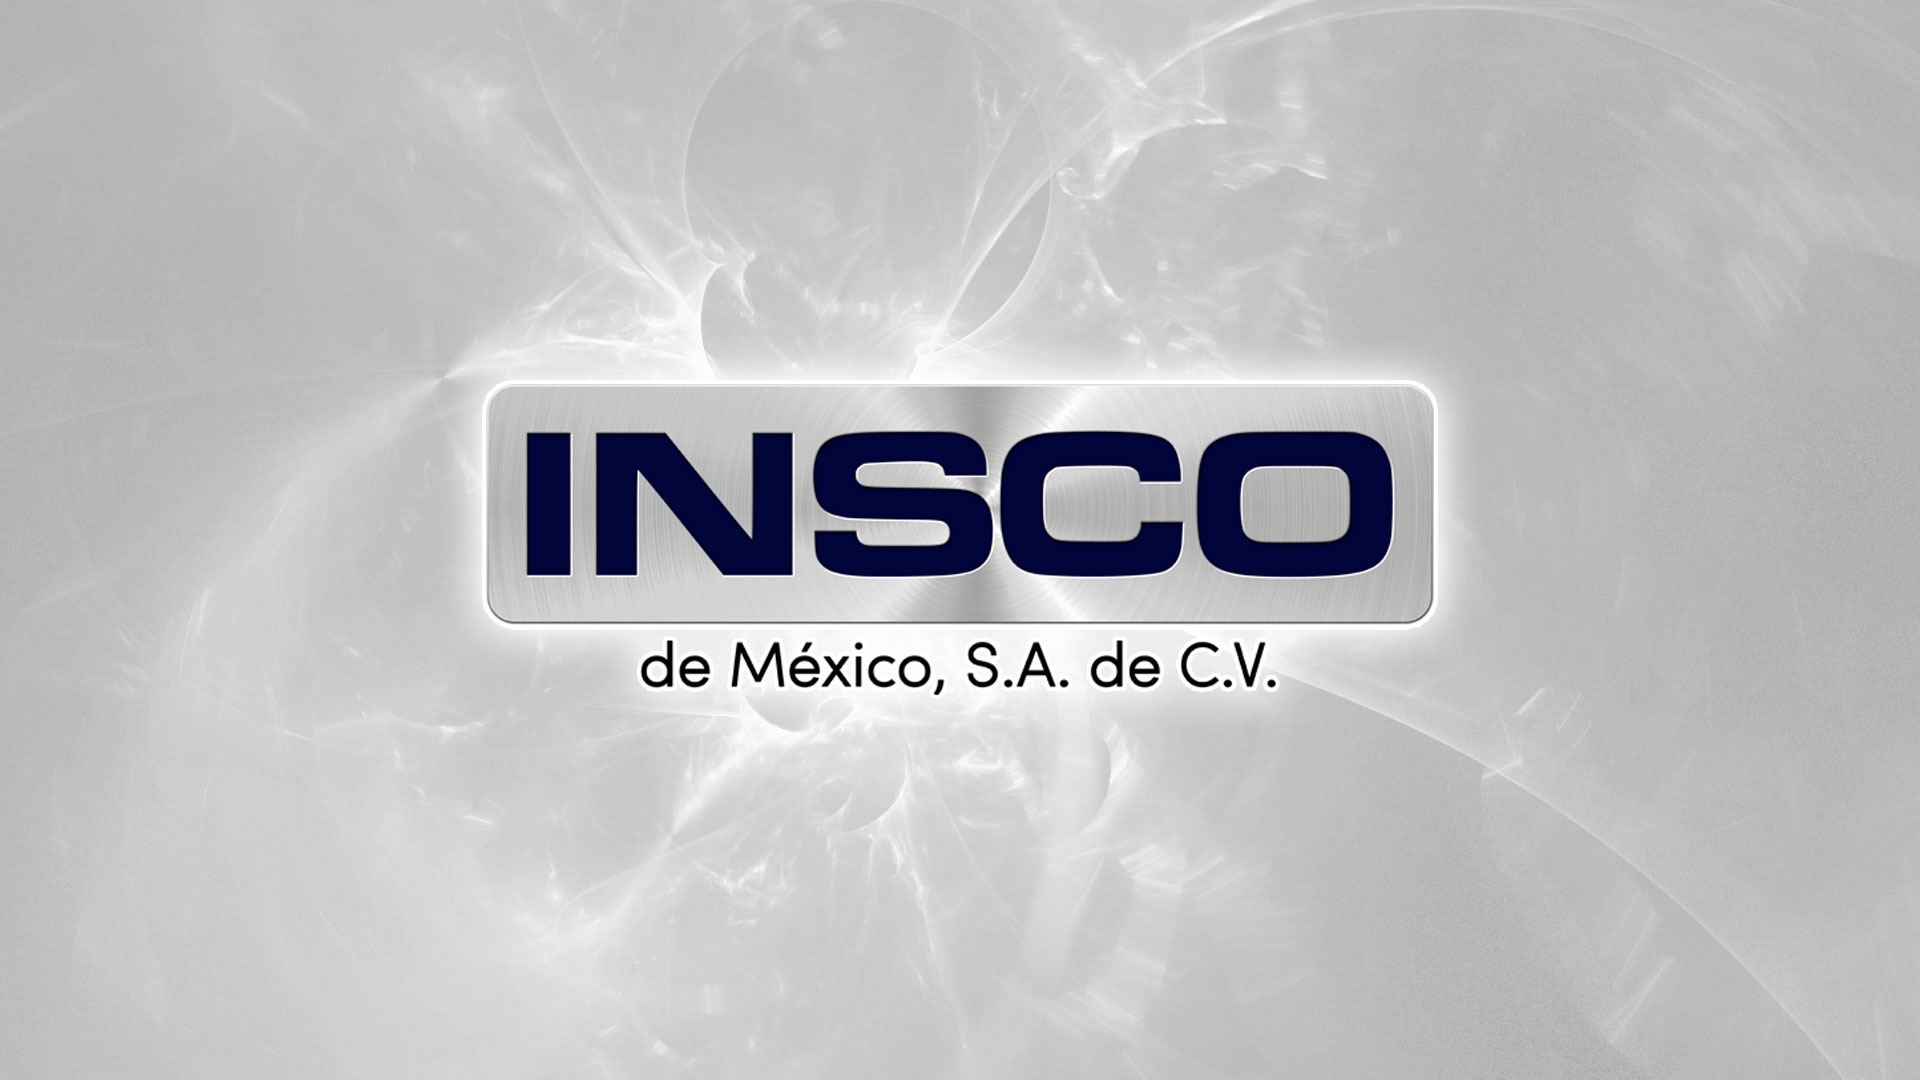 INSCO de México